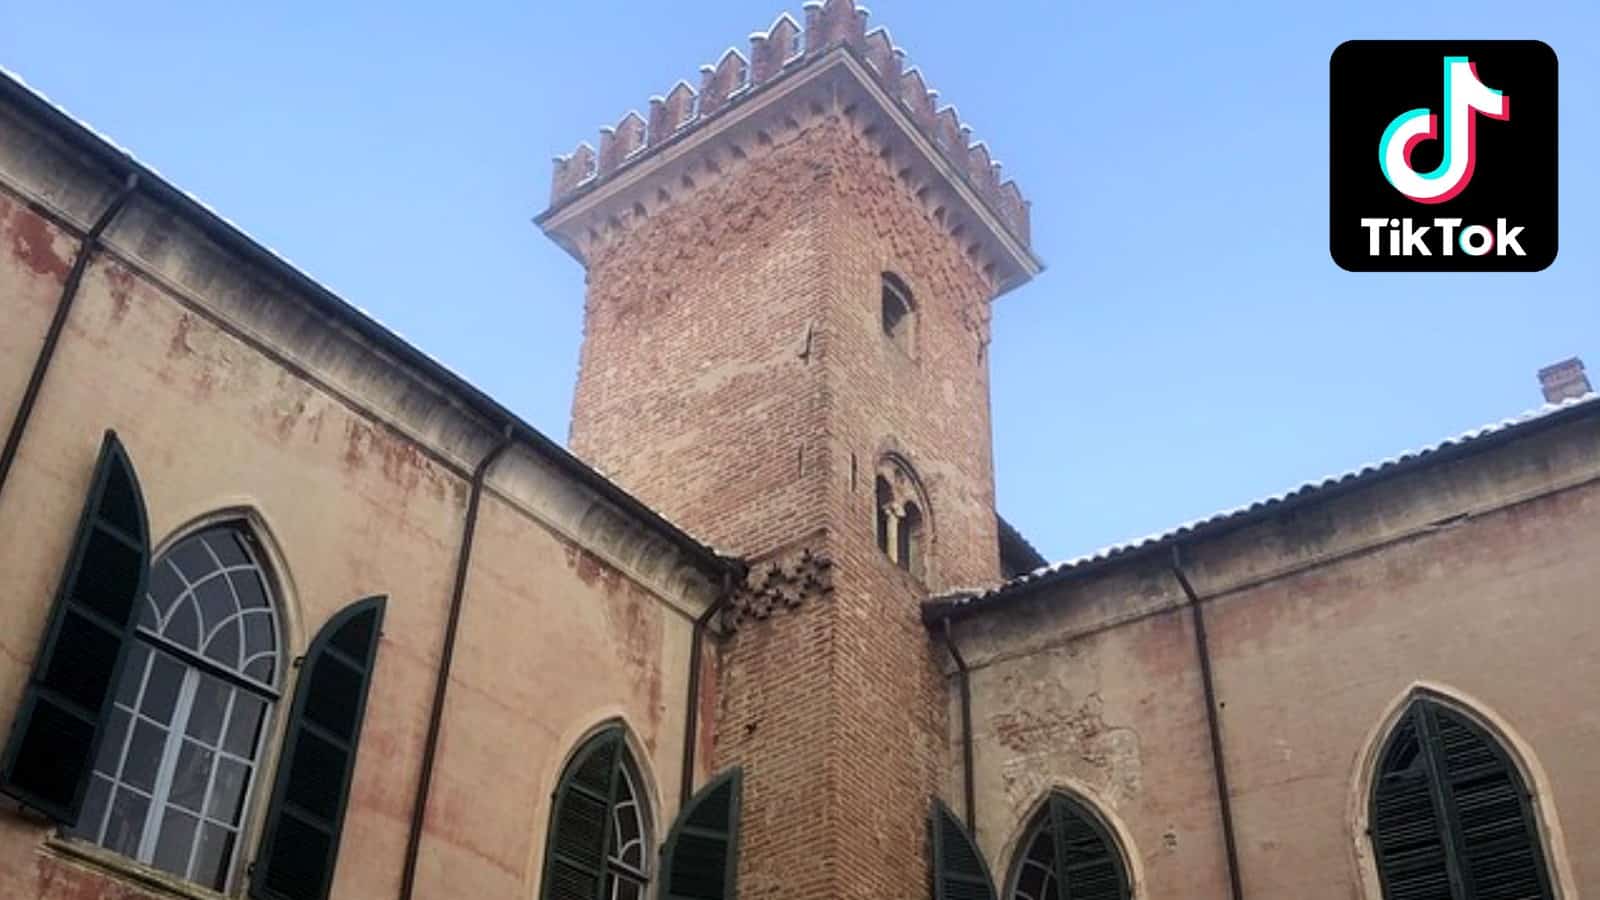 Italian castle named The Castello next to the TikTok logo